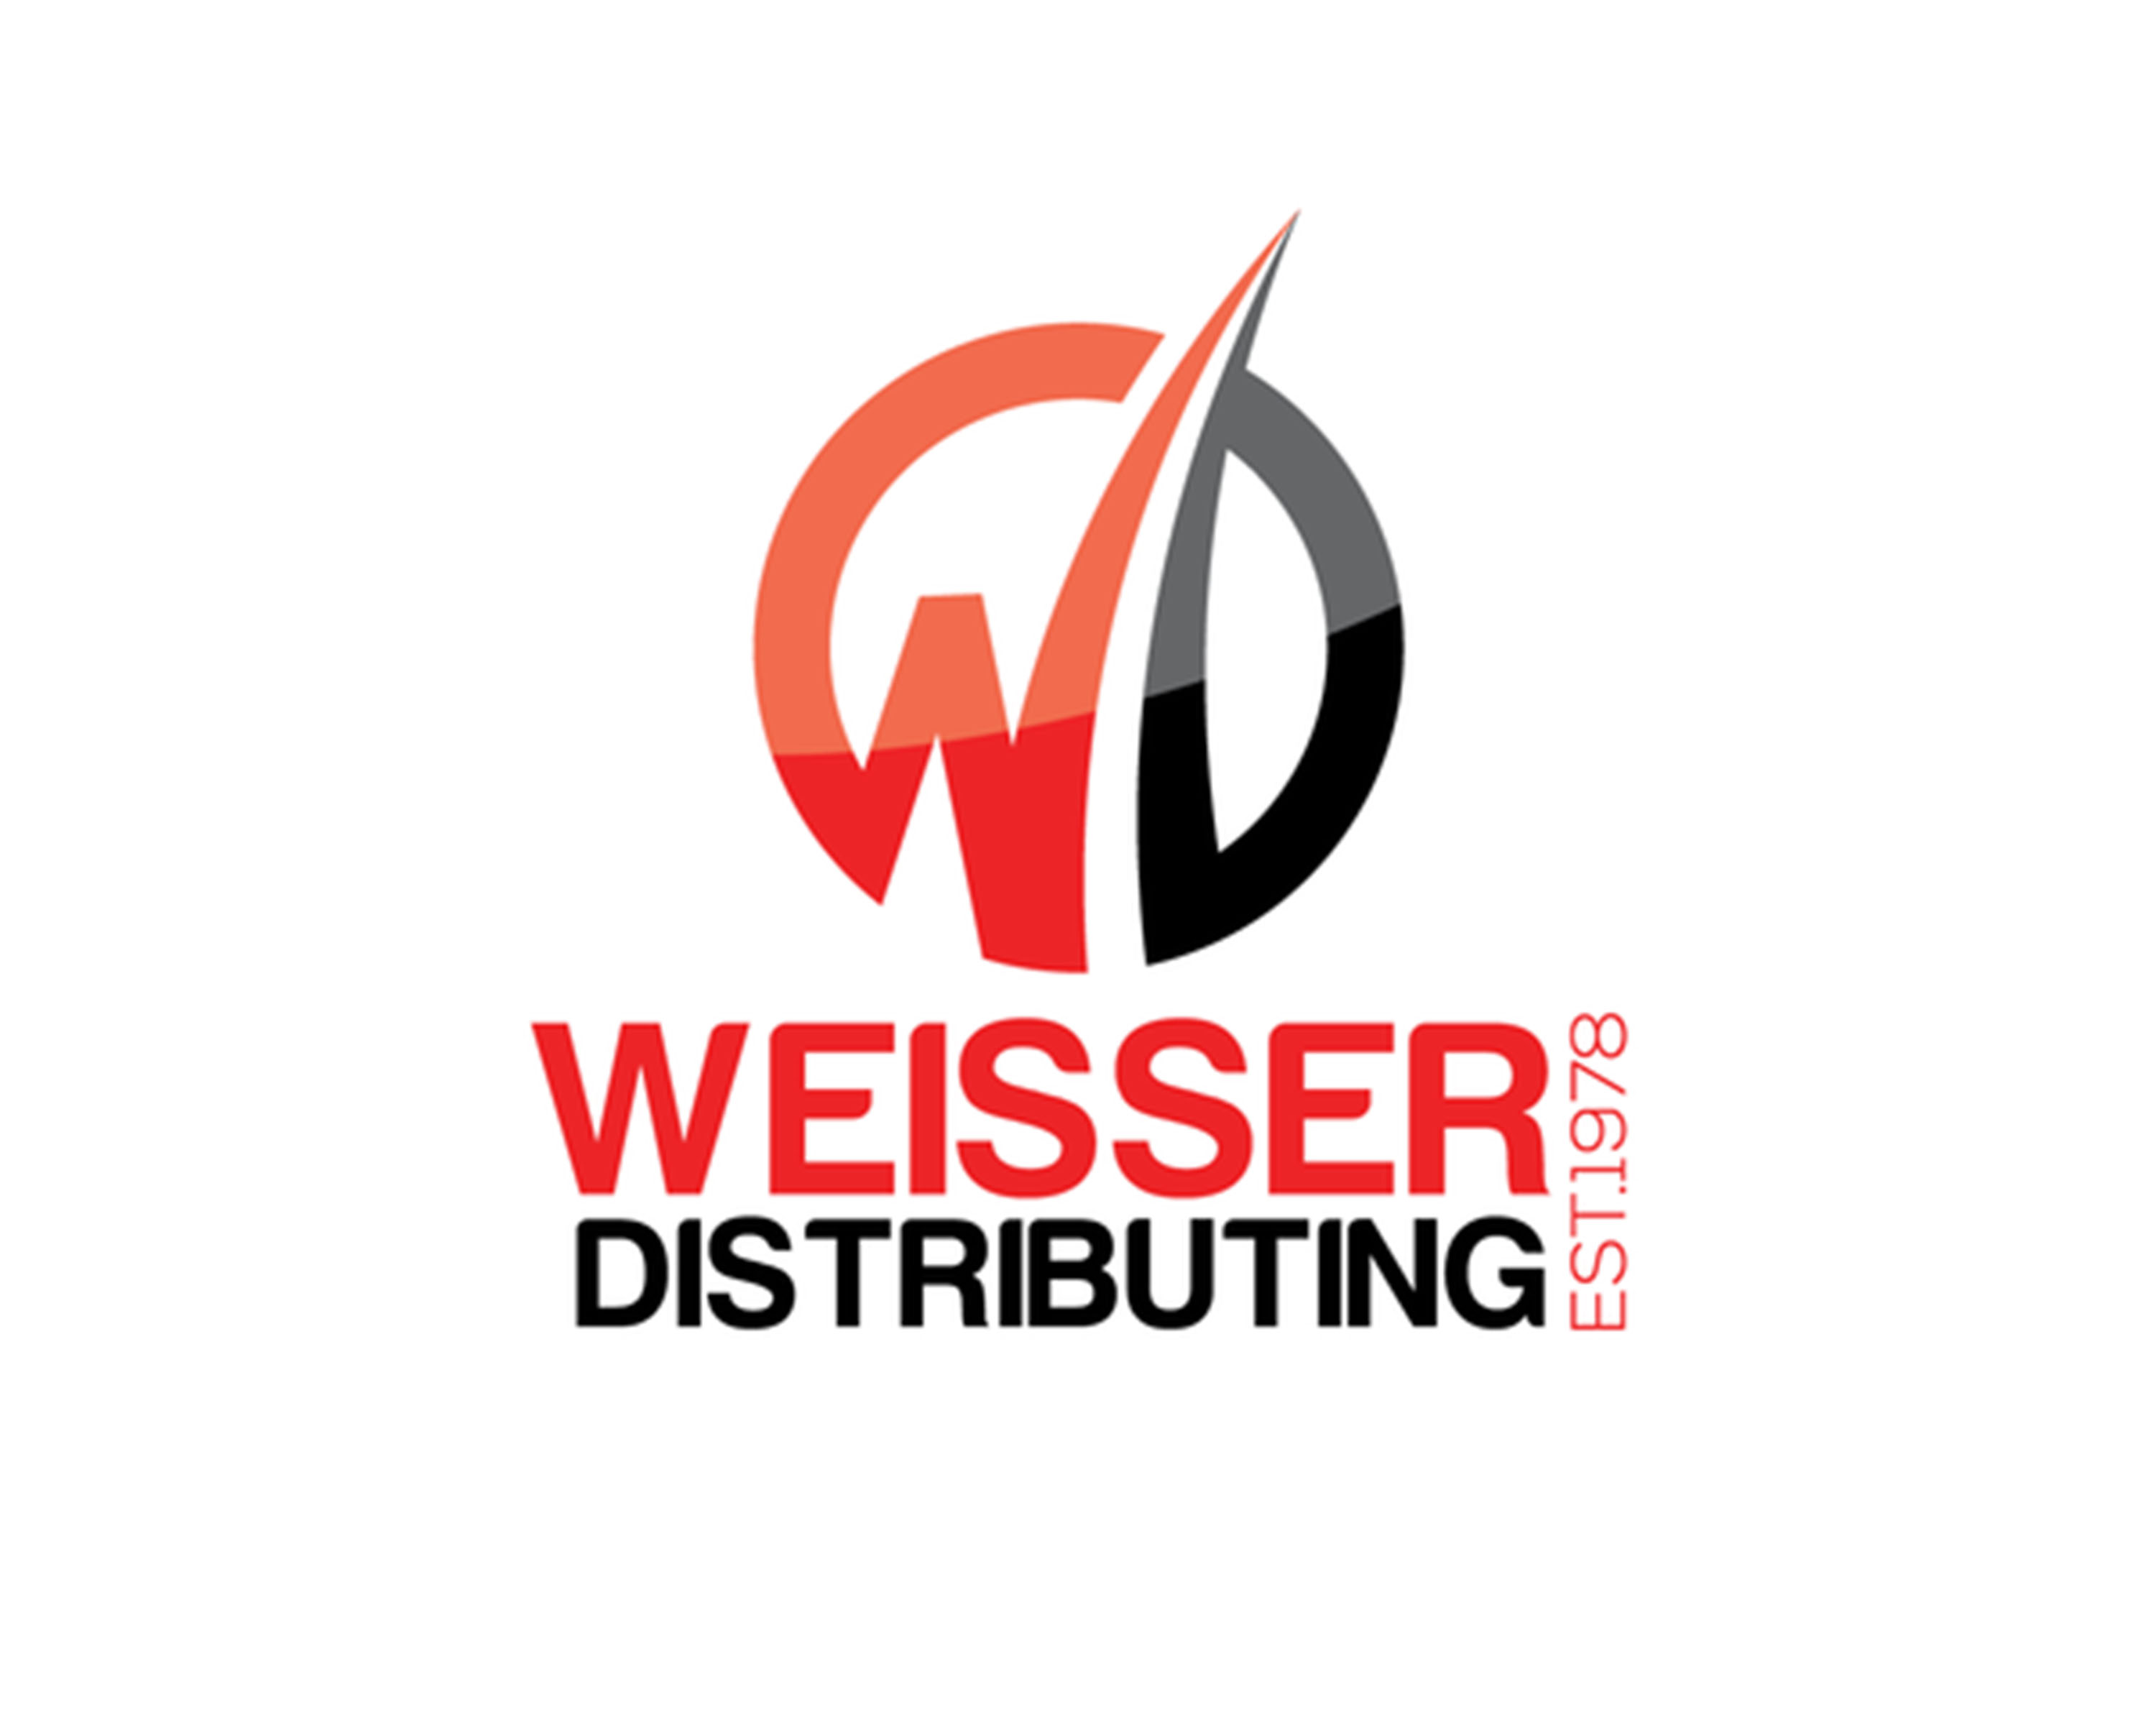 Weisser Distributing